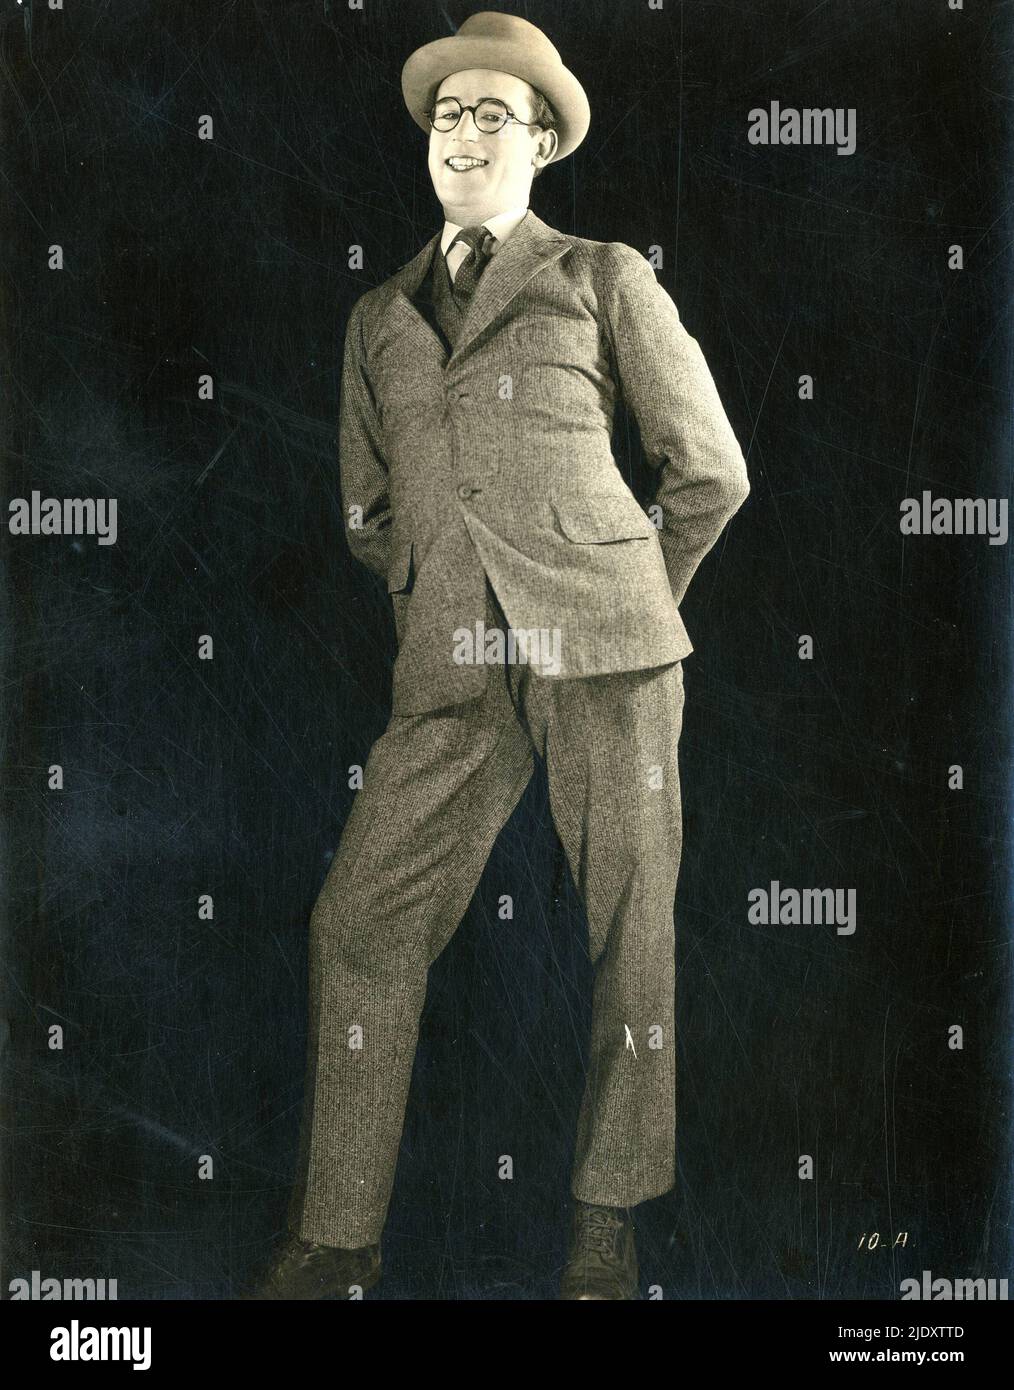 Un ritratto del 1922 della star americana del cinema muto Harold Lloyd Foto Stock